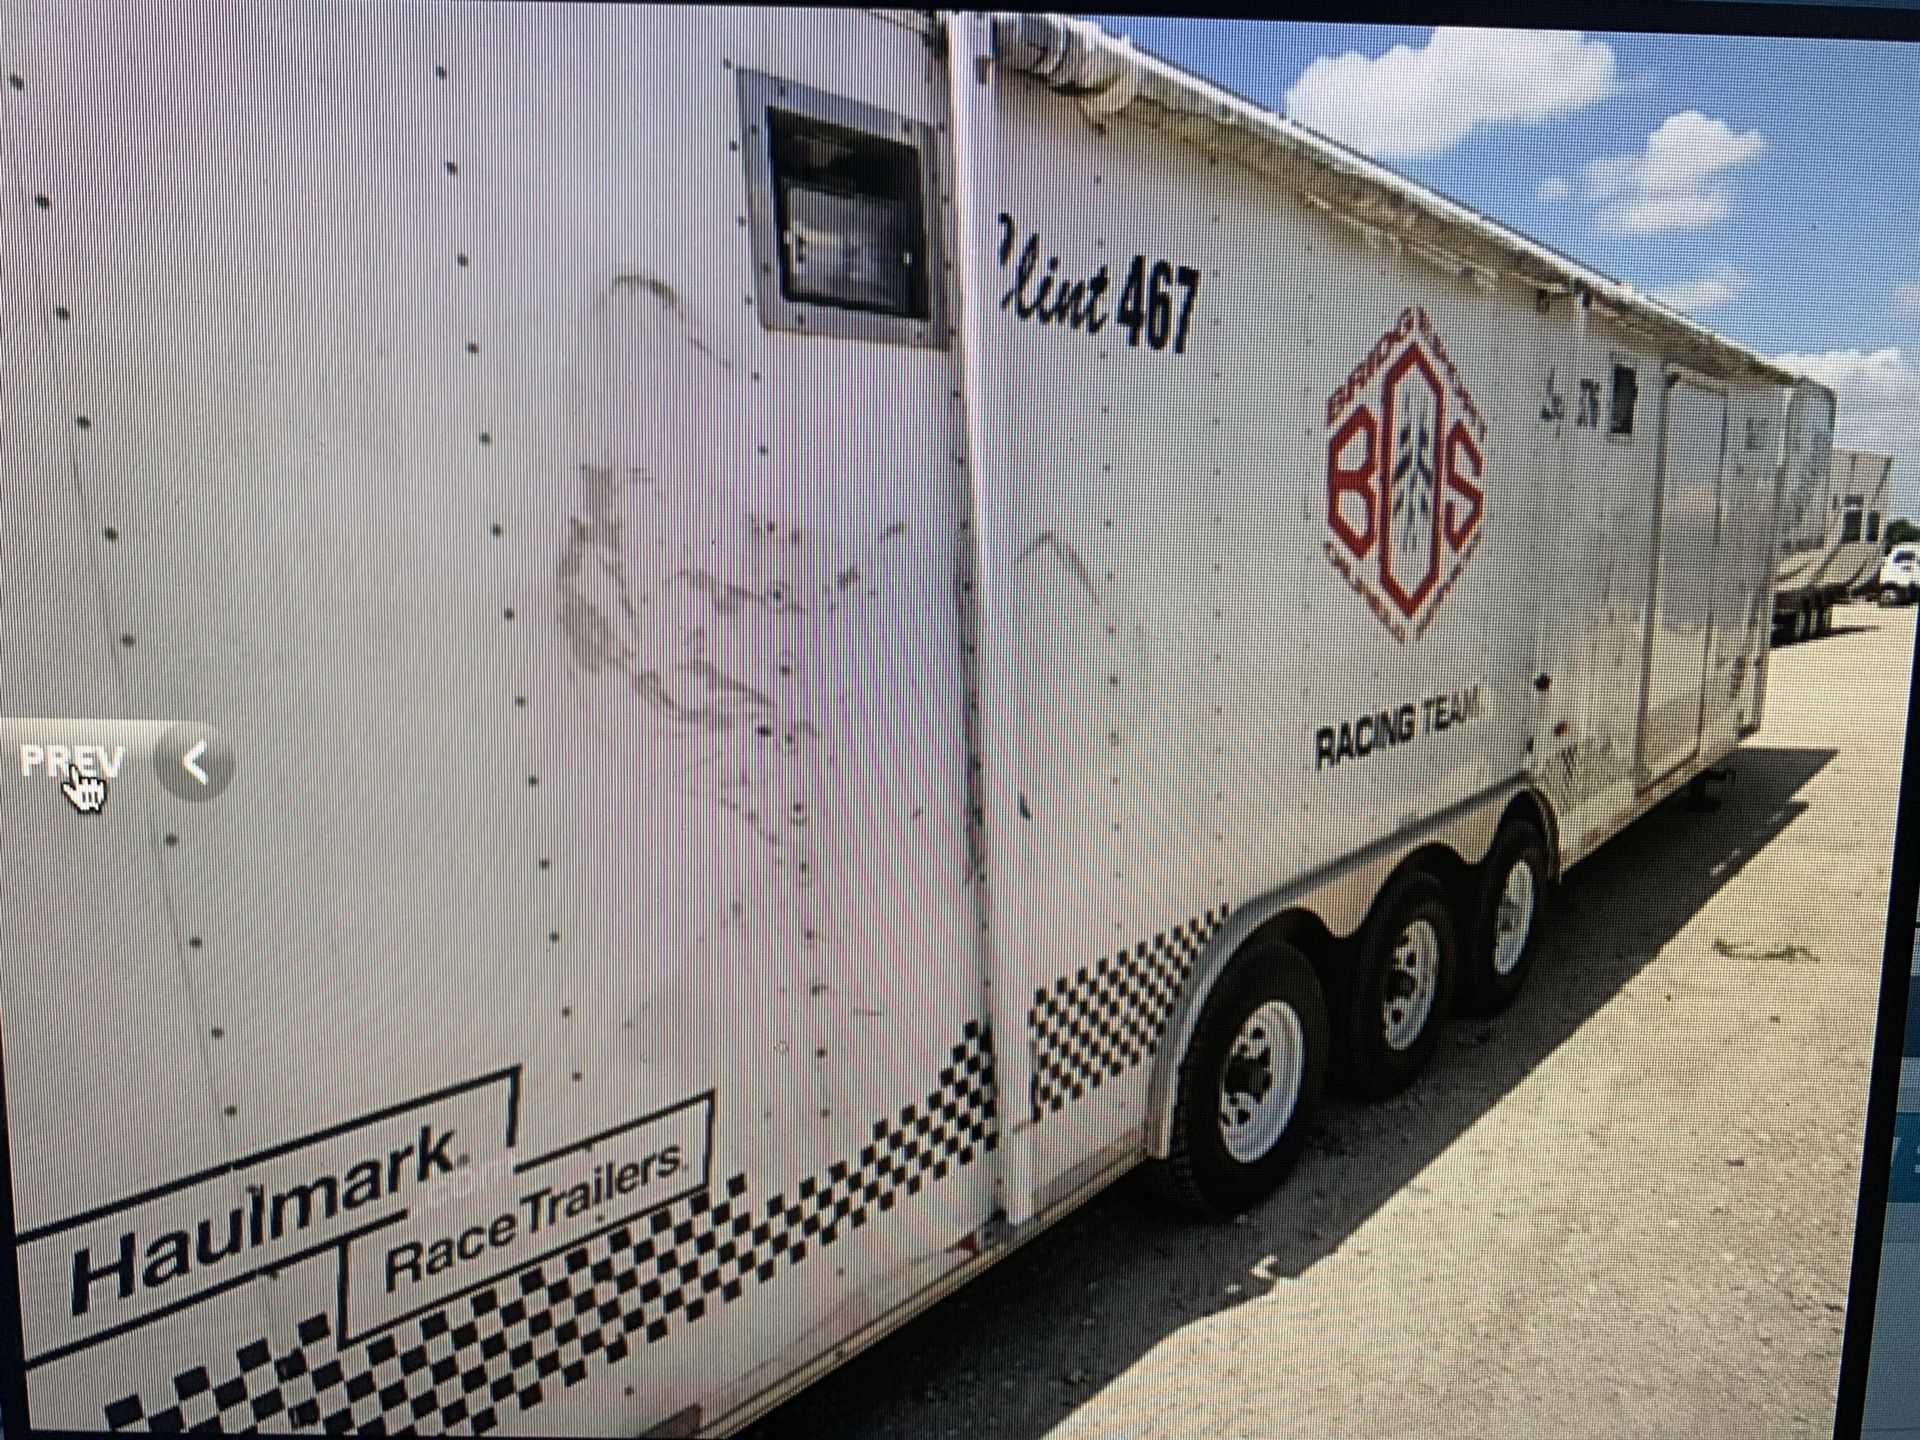 2car hauler enclosed 36 ft cargo trailer